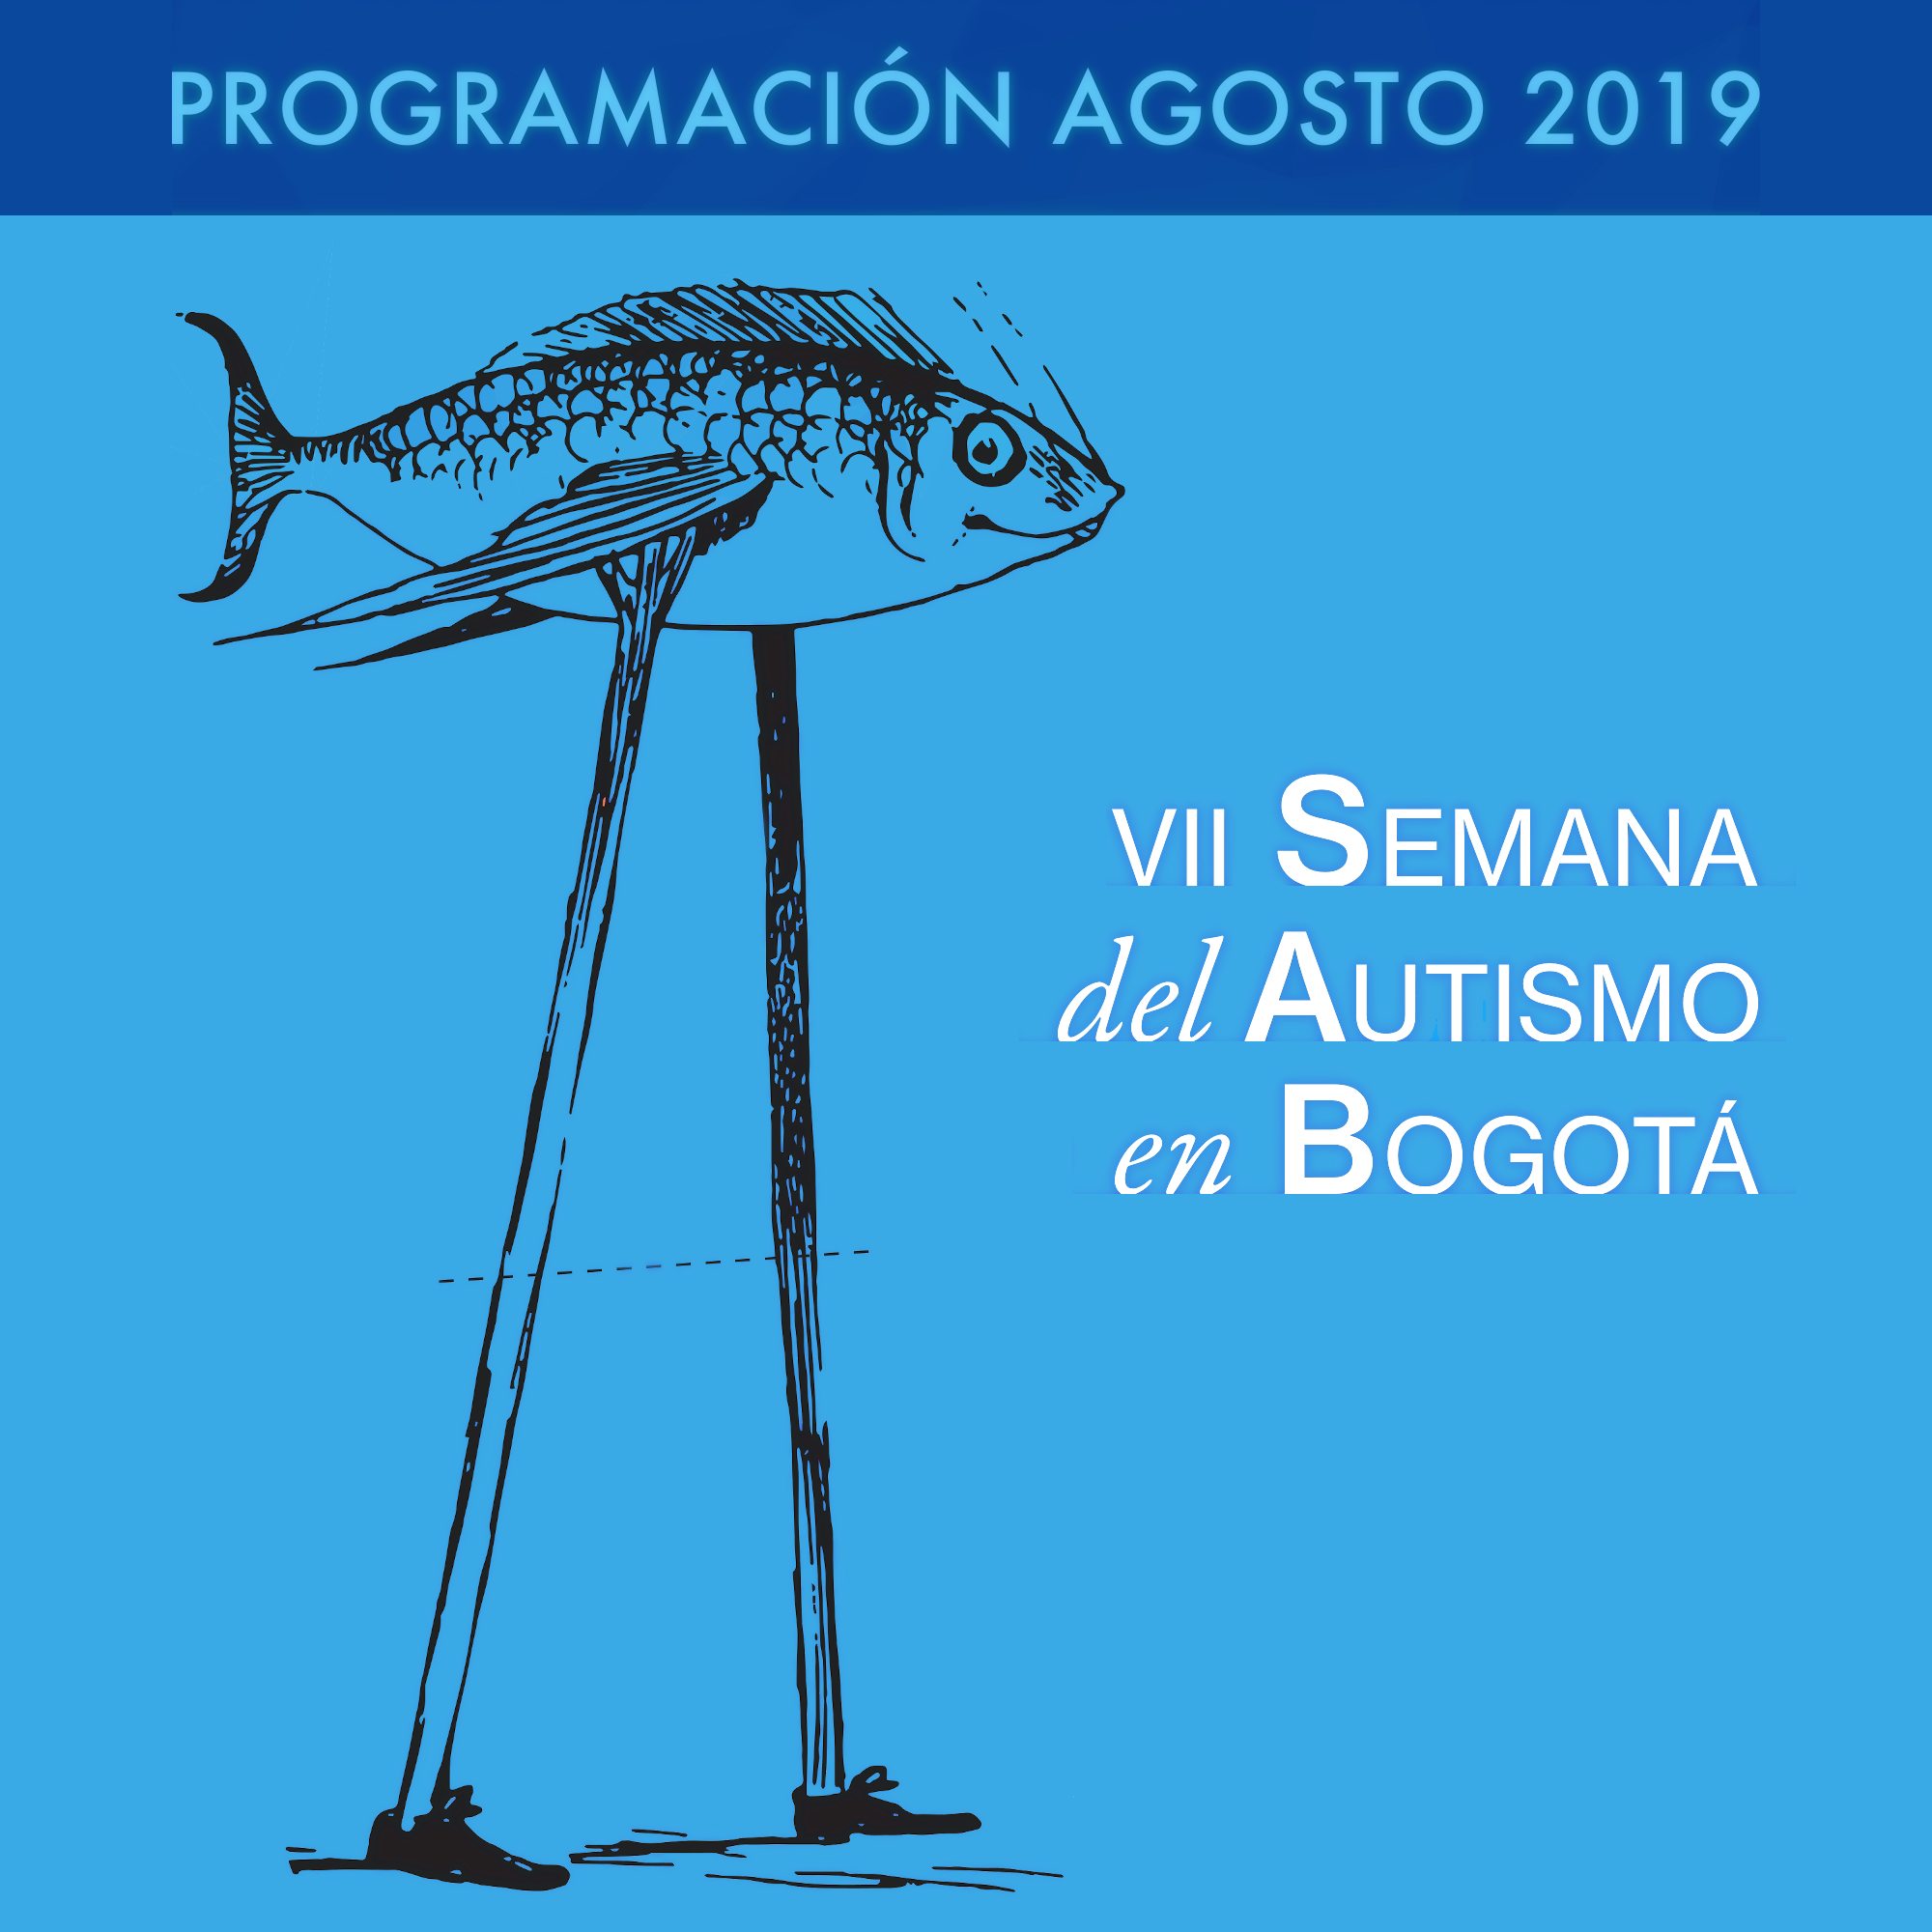 VII Semana del Autismo en Bogotá